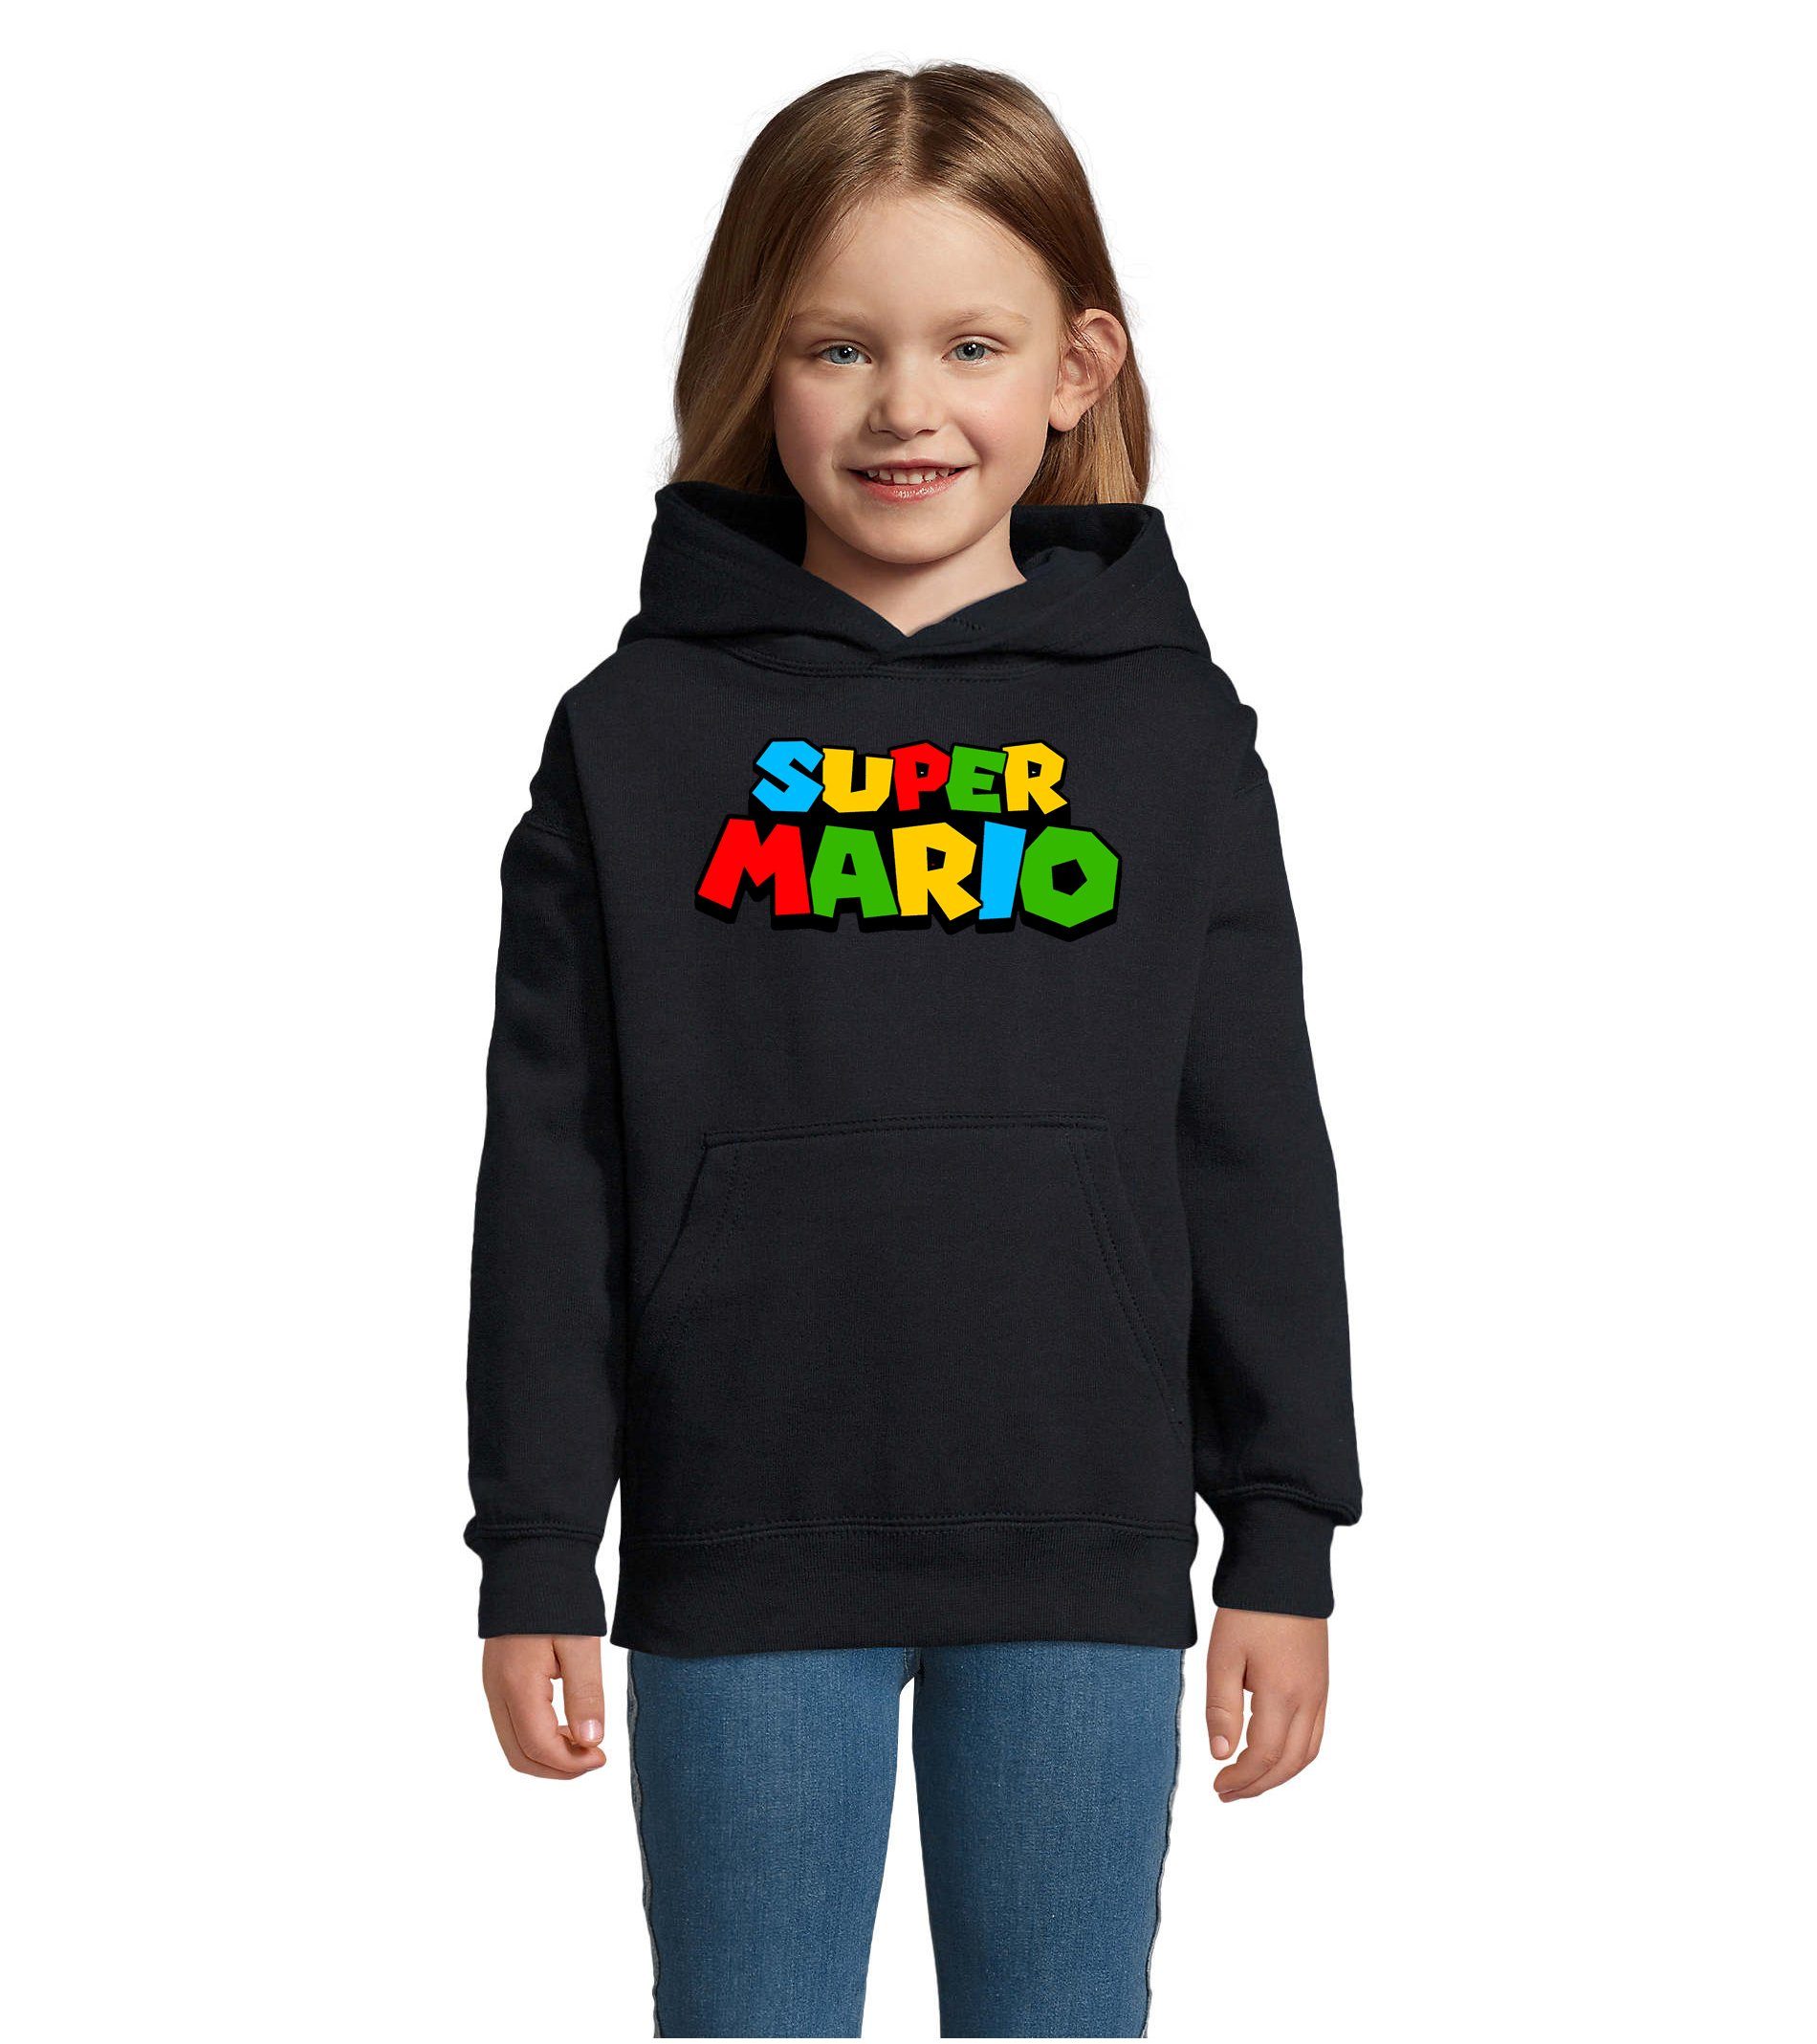 Blondie & Brownie Hoodie Kinder Super Mario Nintendo Gamer Gaming Konsole Spiele mit Kapuze Navyblau